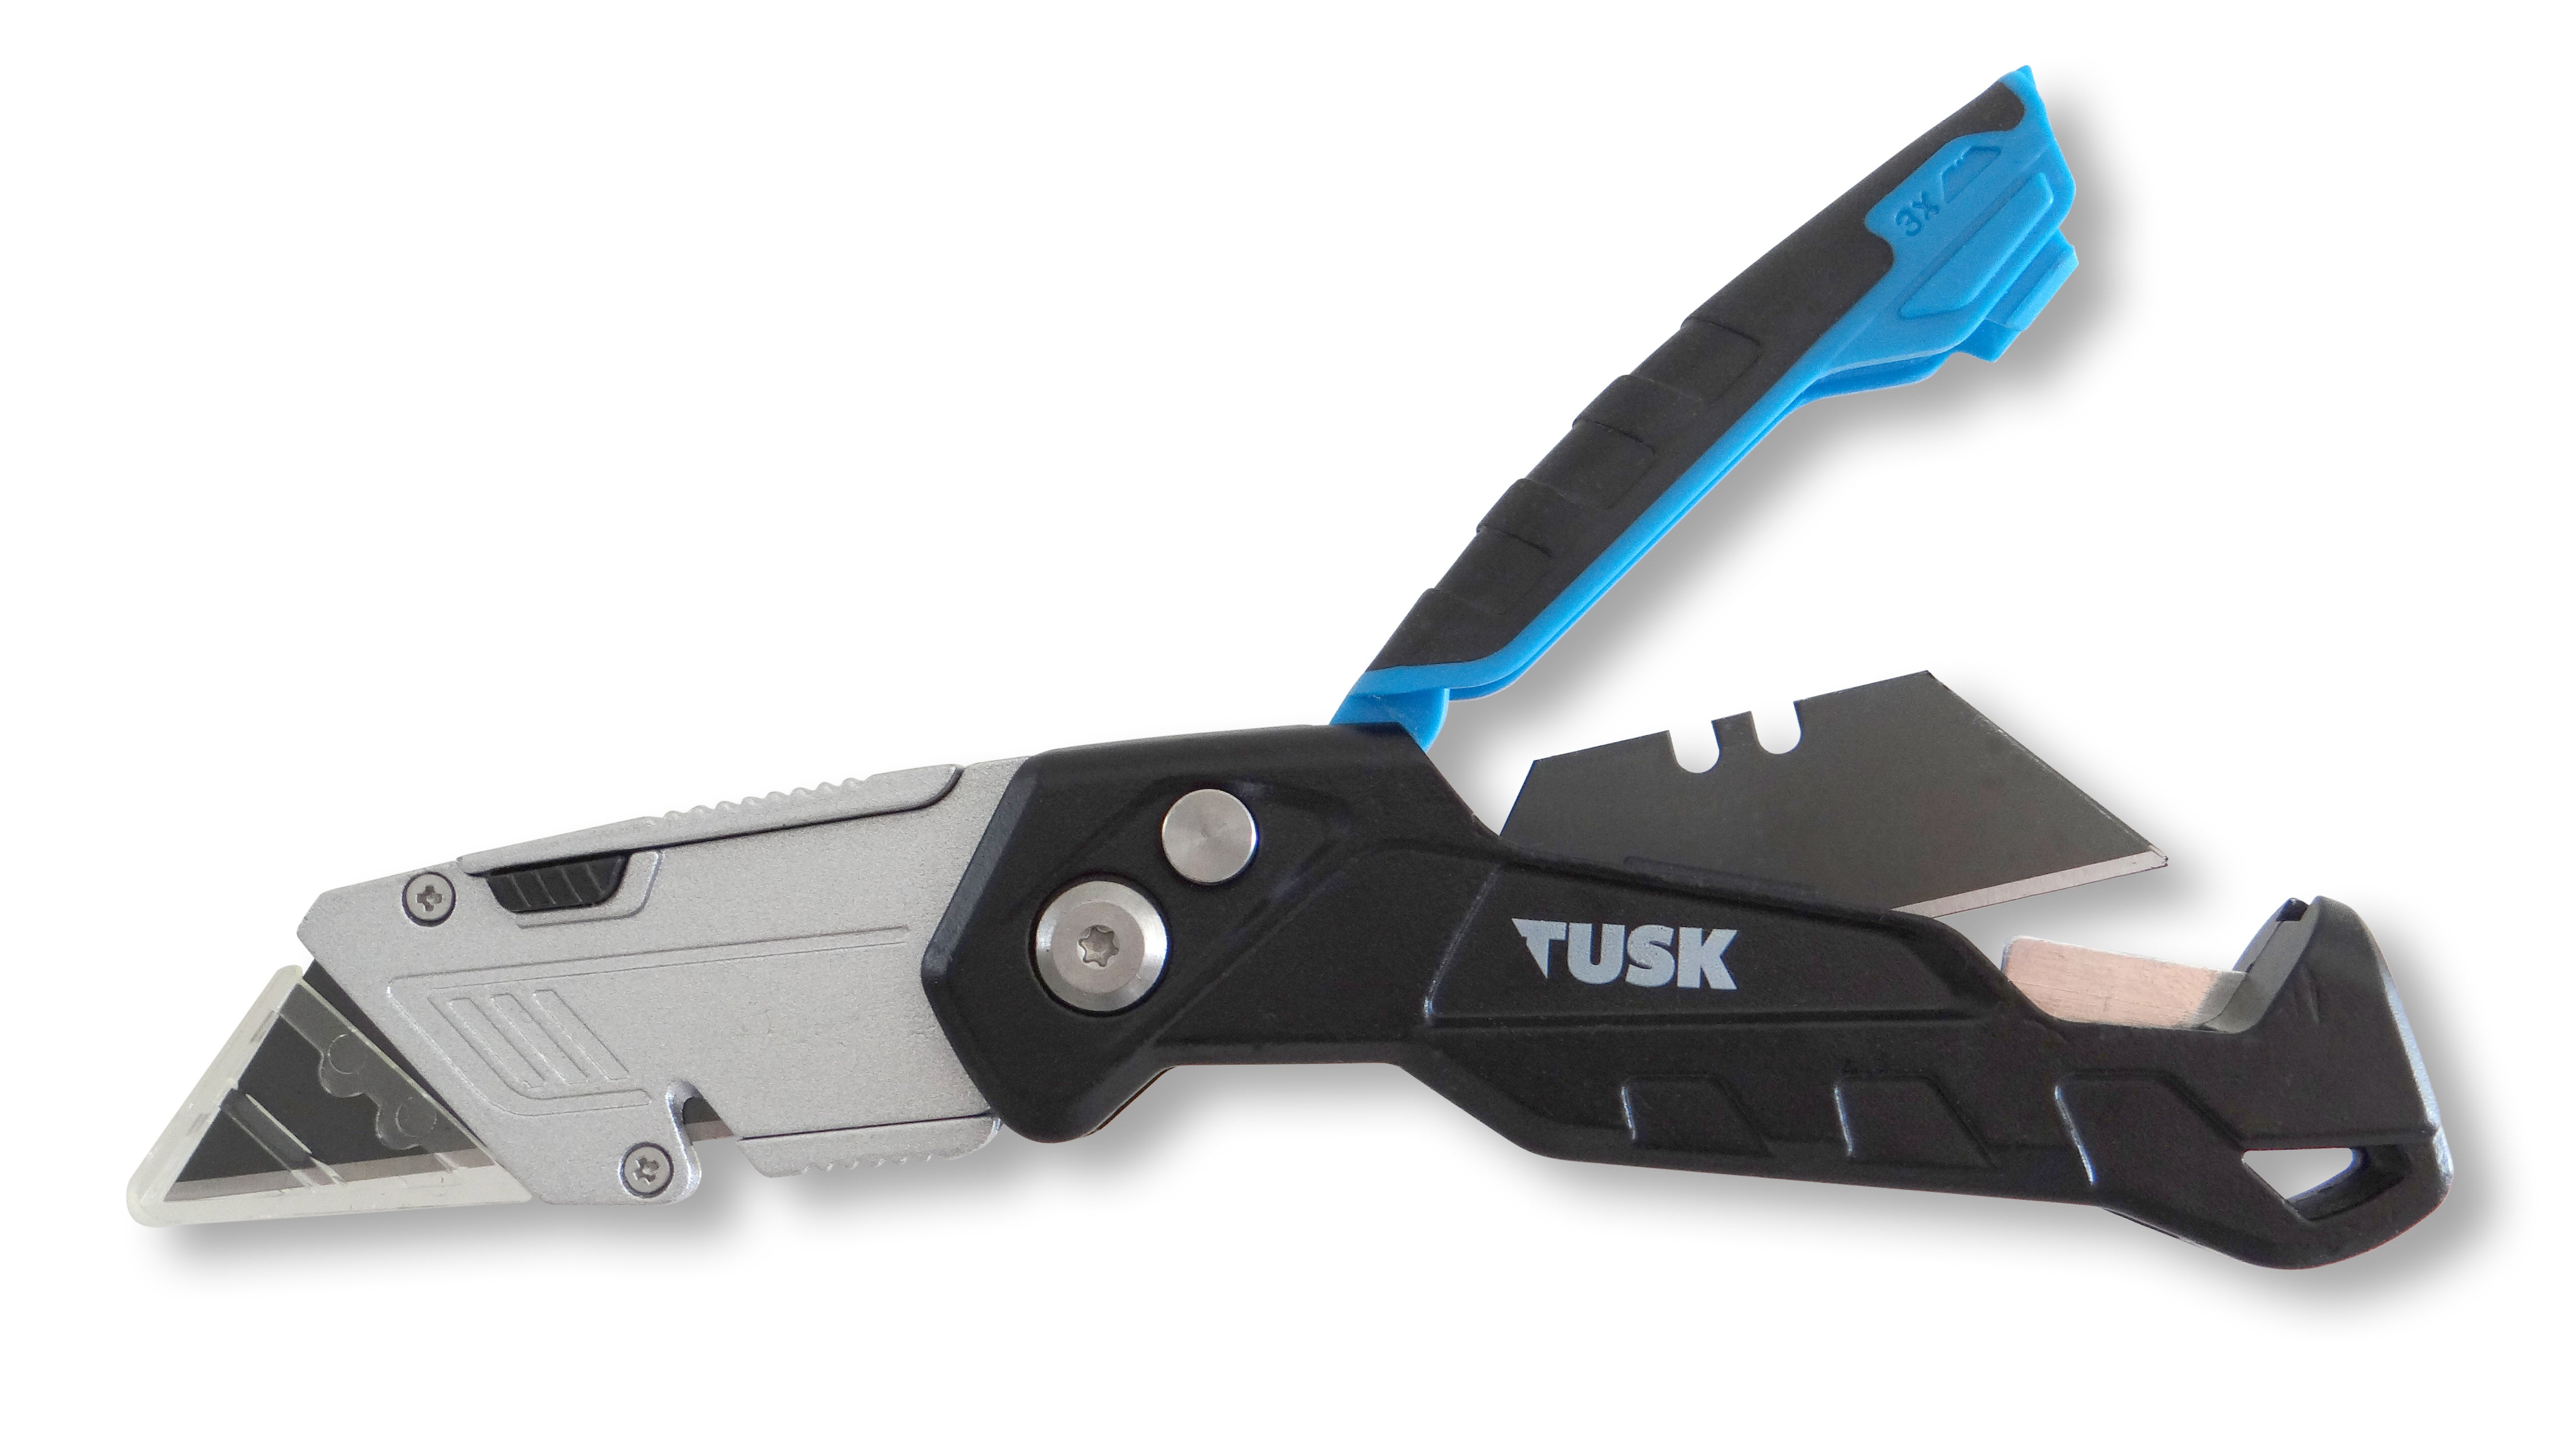 Tusk Utility Knife 2Pc Set